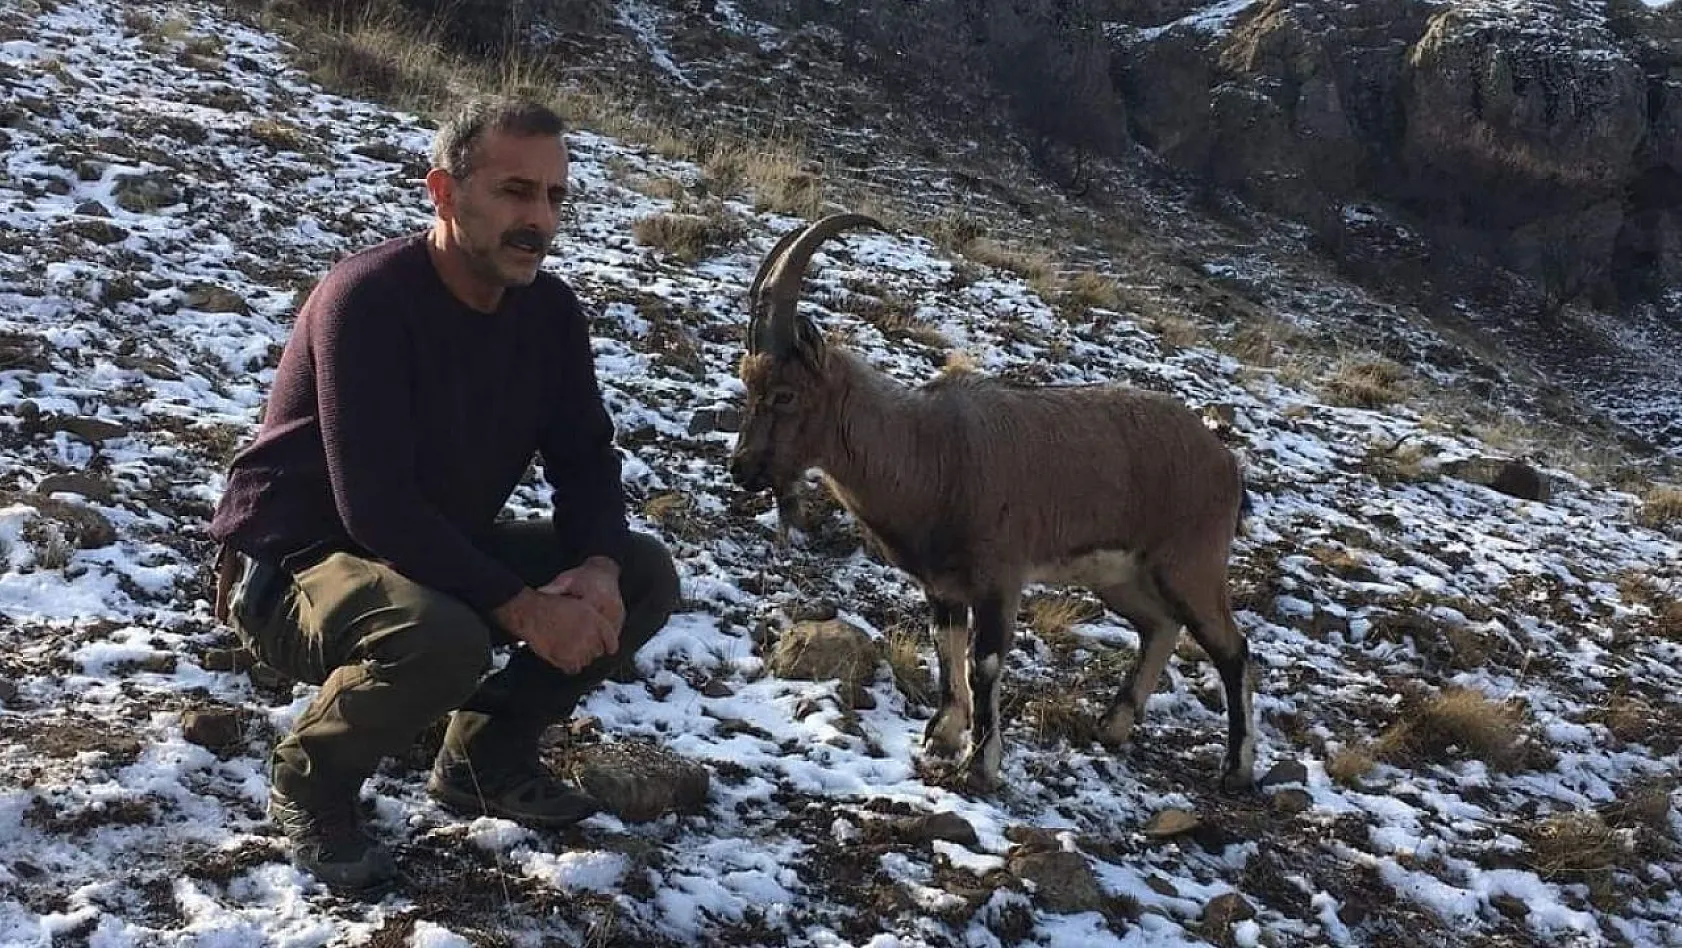 Hasta dağ keçisi tedavi edilip doğaya bırakıldı